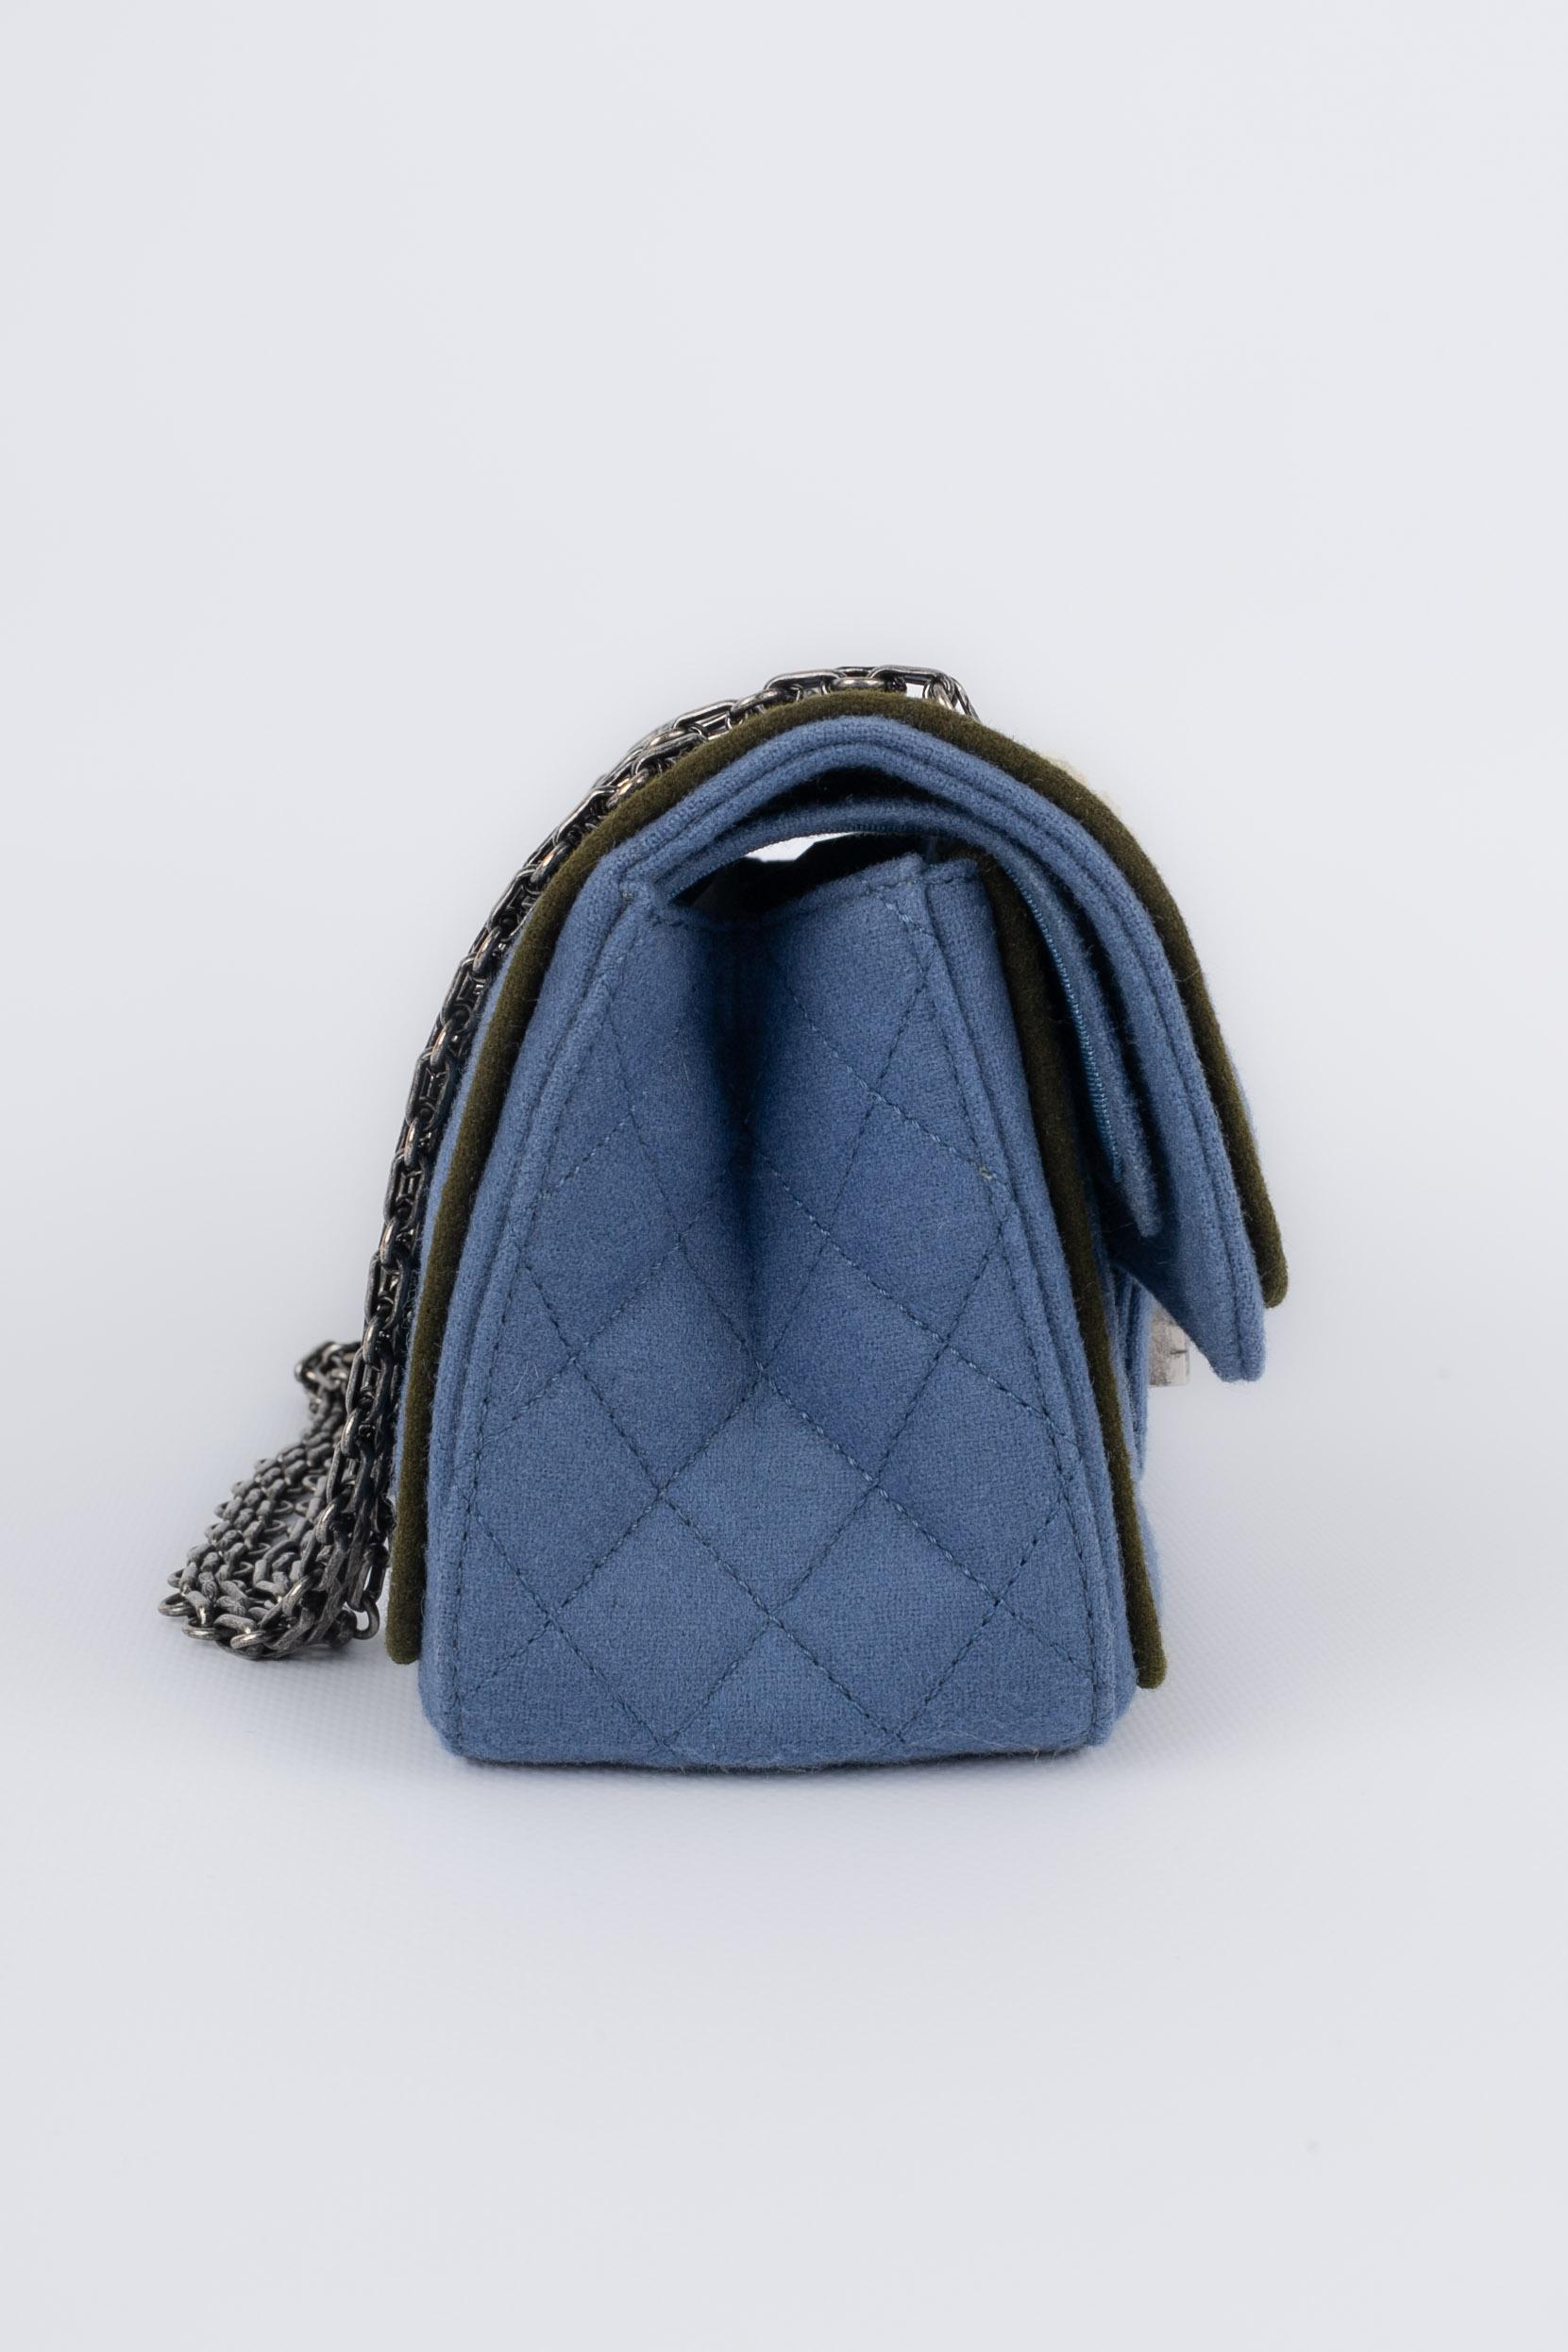 Chanel 2.55 bag 2015/2016 In Excellent Condition For Sale In SAINT-OUEN-SUR-SEINE, FR